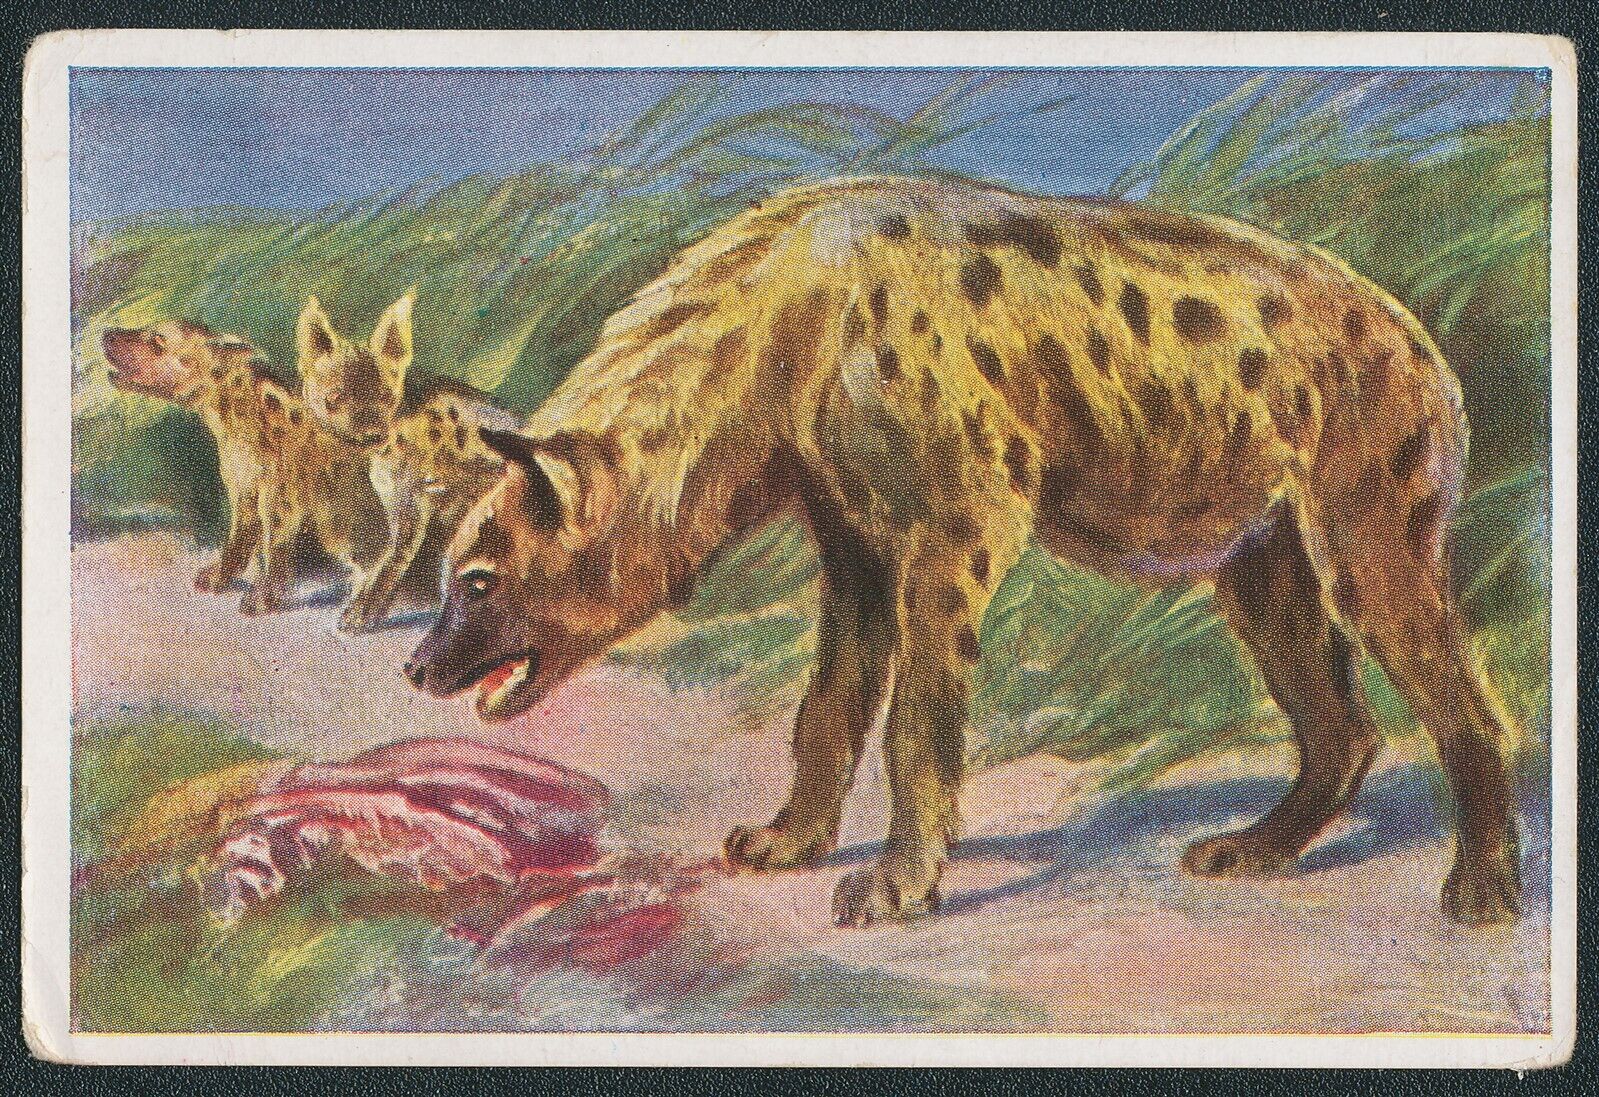 1933 SPOTTED HYENA GERMAN WUNDER DER TIERWEIT TOBACCO ANIMAL CARD #137 VG